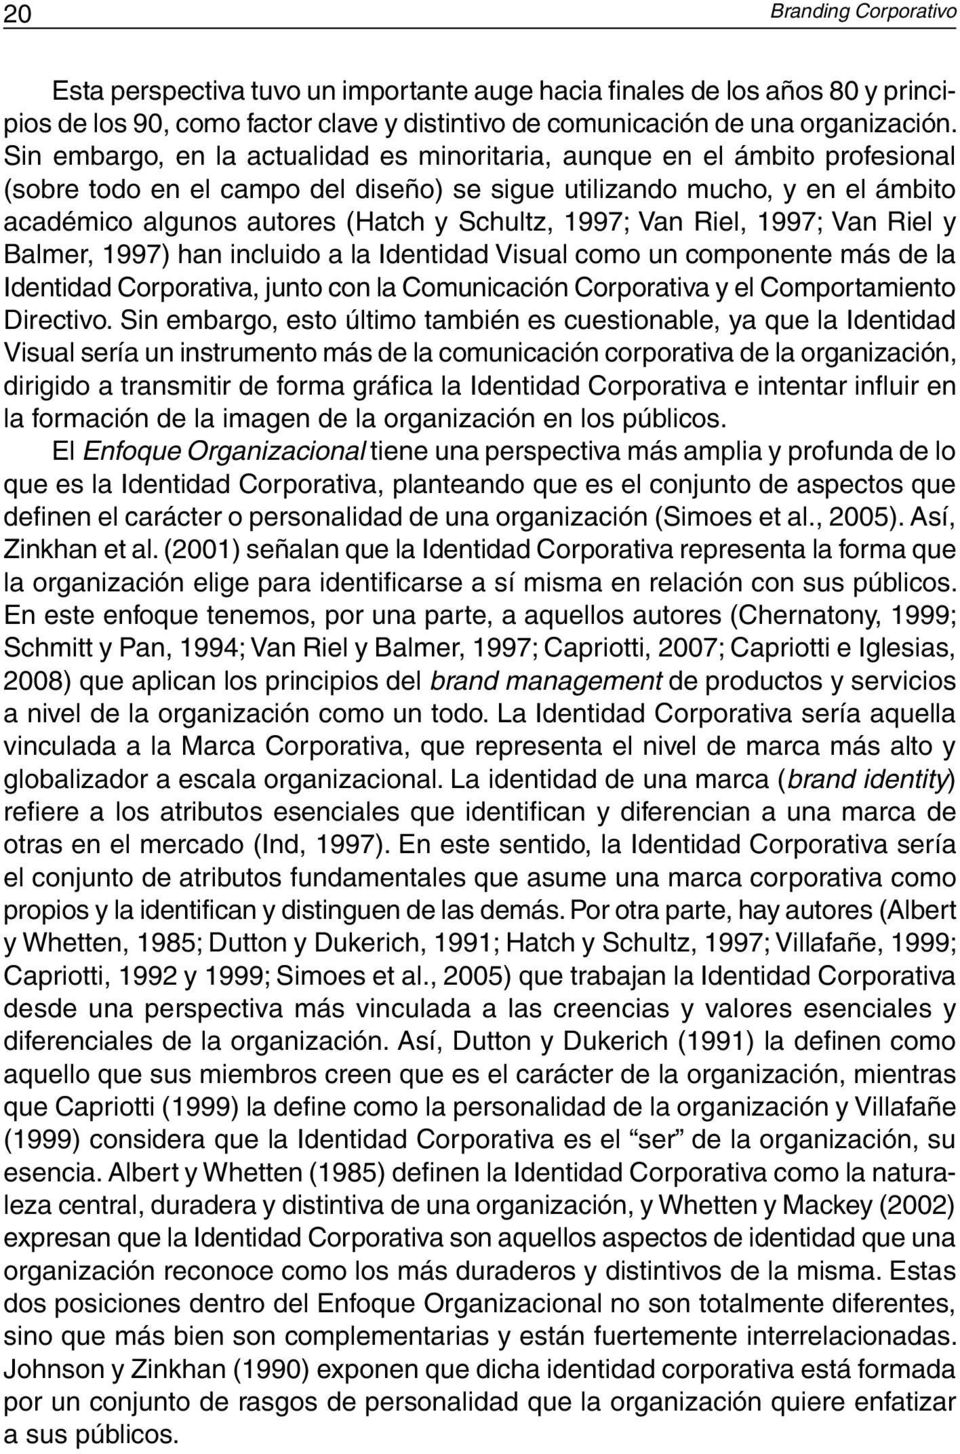 1997; Van Riel, 1997; Van Riel y Balmer, 1997) han incluido a la Identidad Visual como un componente más de la Identidad Corporativa, junto con la Comunicación Corporativa y el Comportamiento